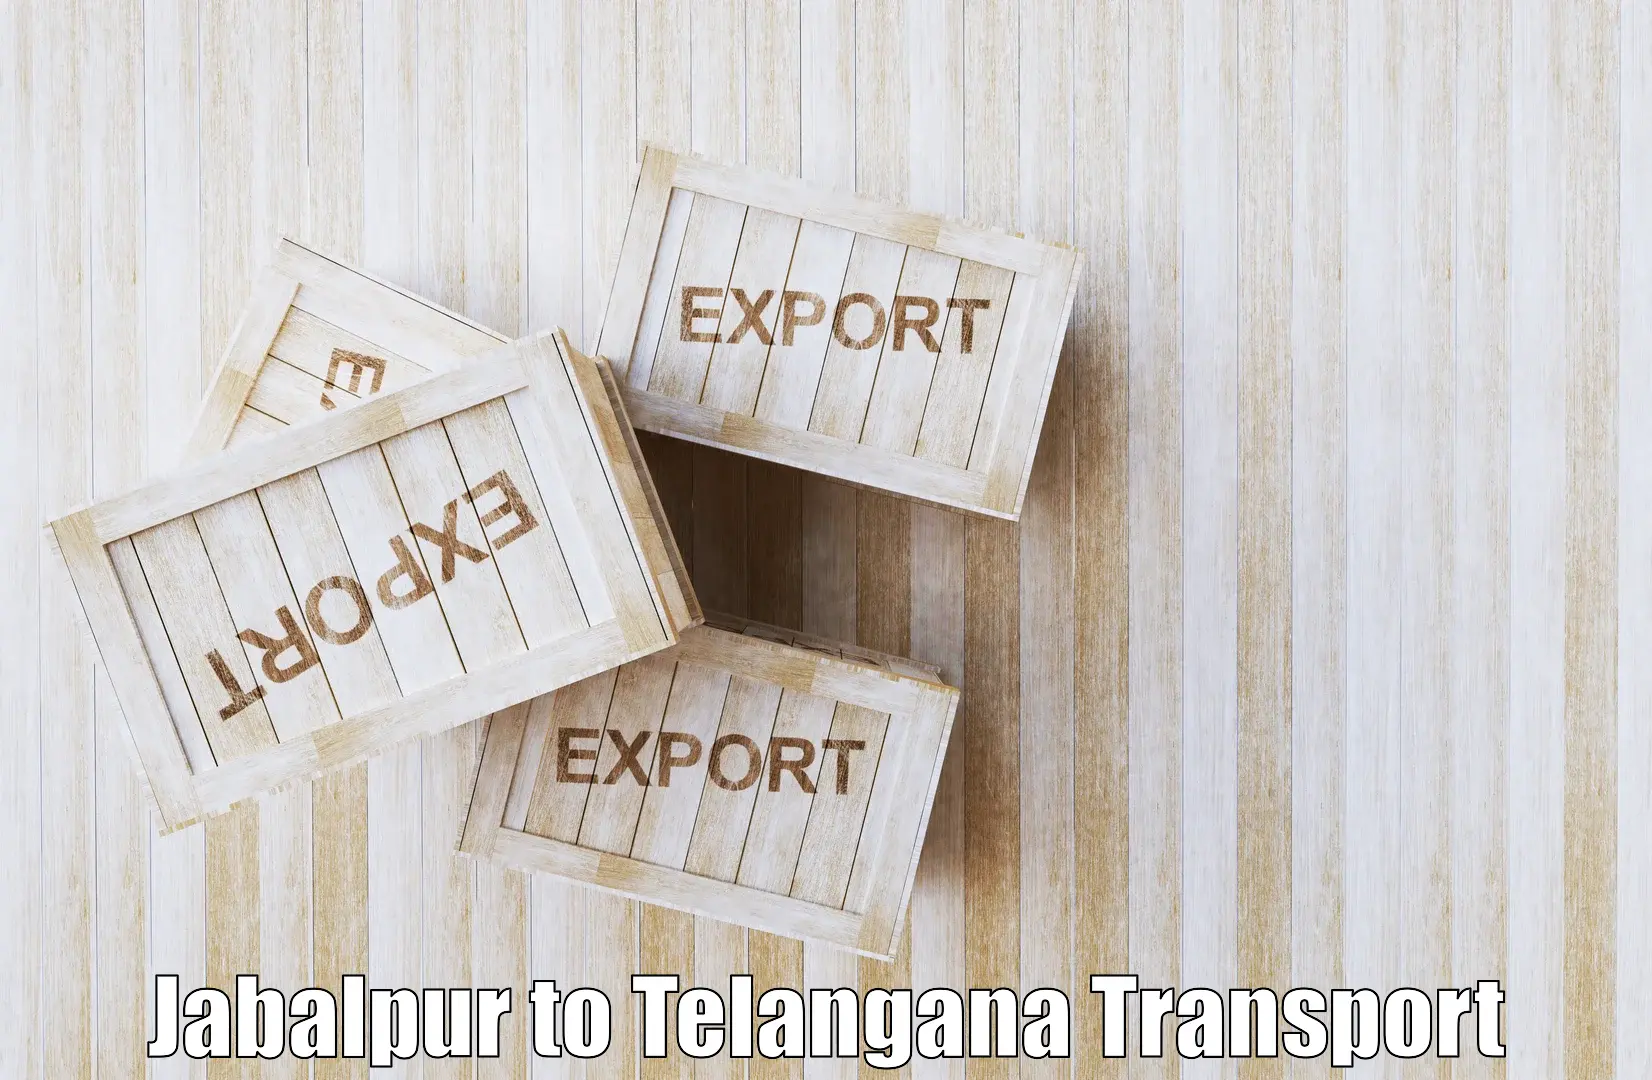 Road transport online services in Jabalpur to Thirumalagiri